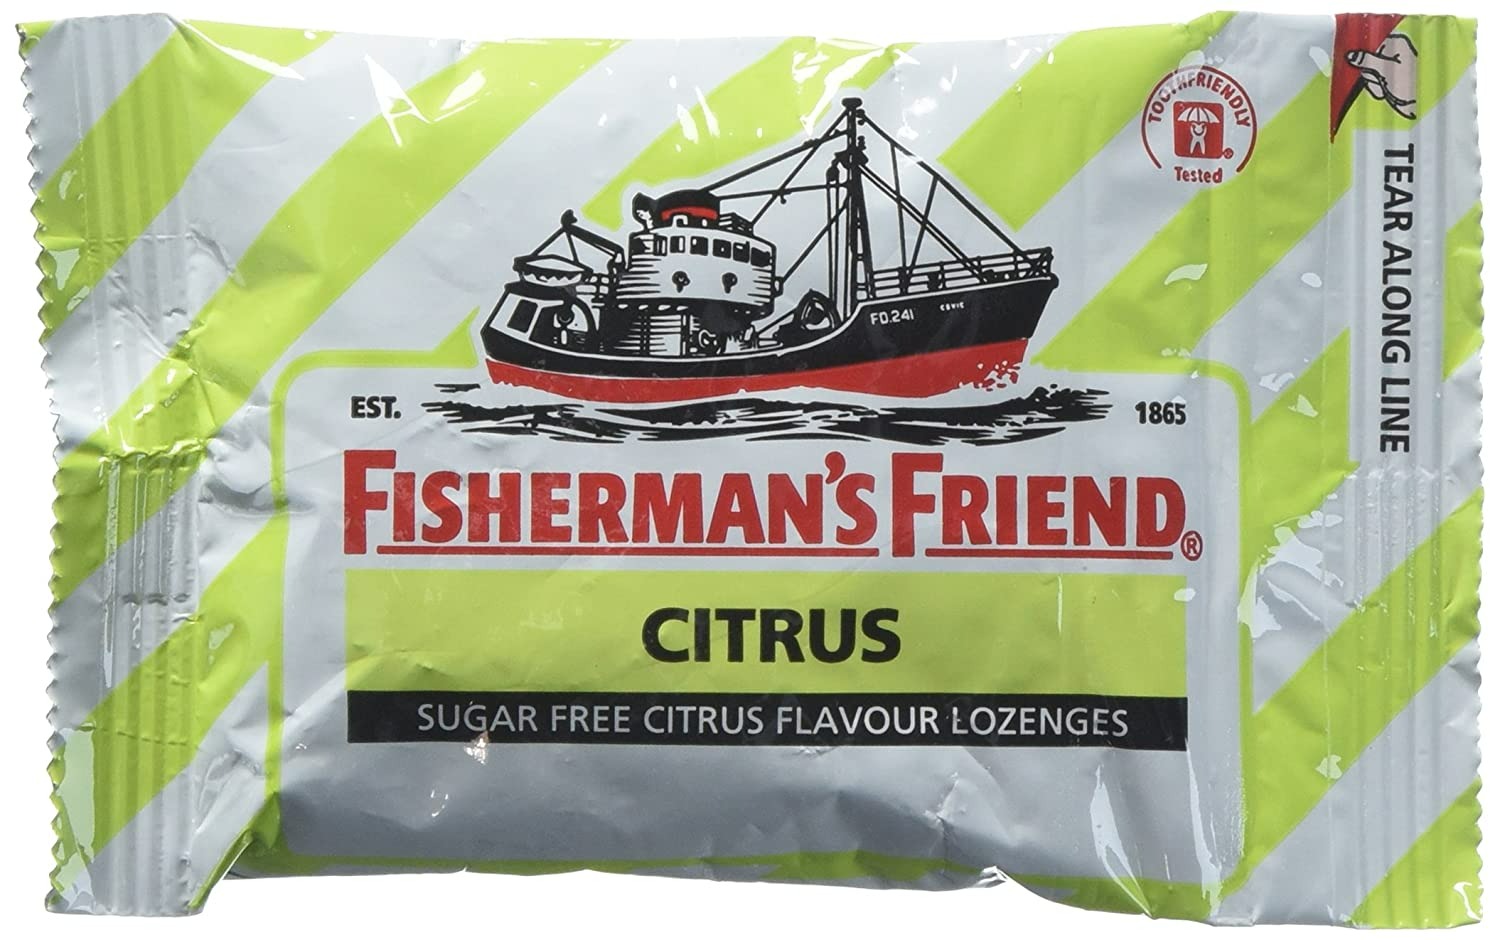 Fisherman's Friend Citrus Fravour Lozenges Sugar Free Candy 25g -2 Paket